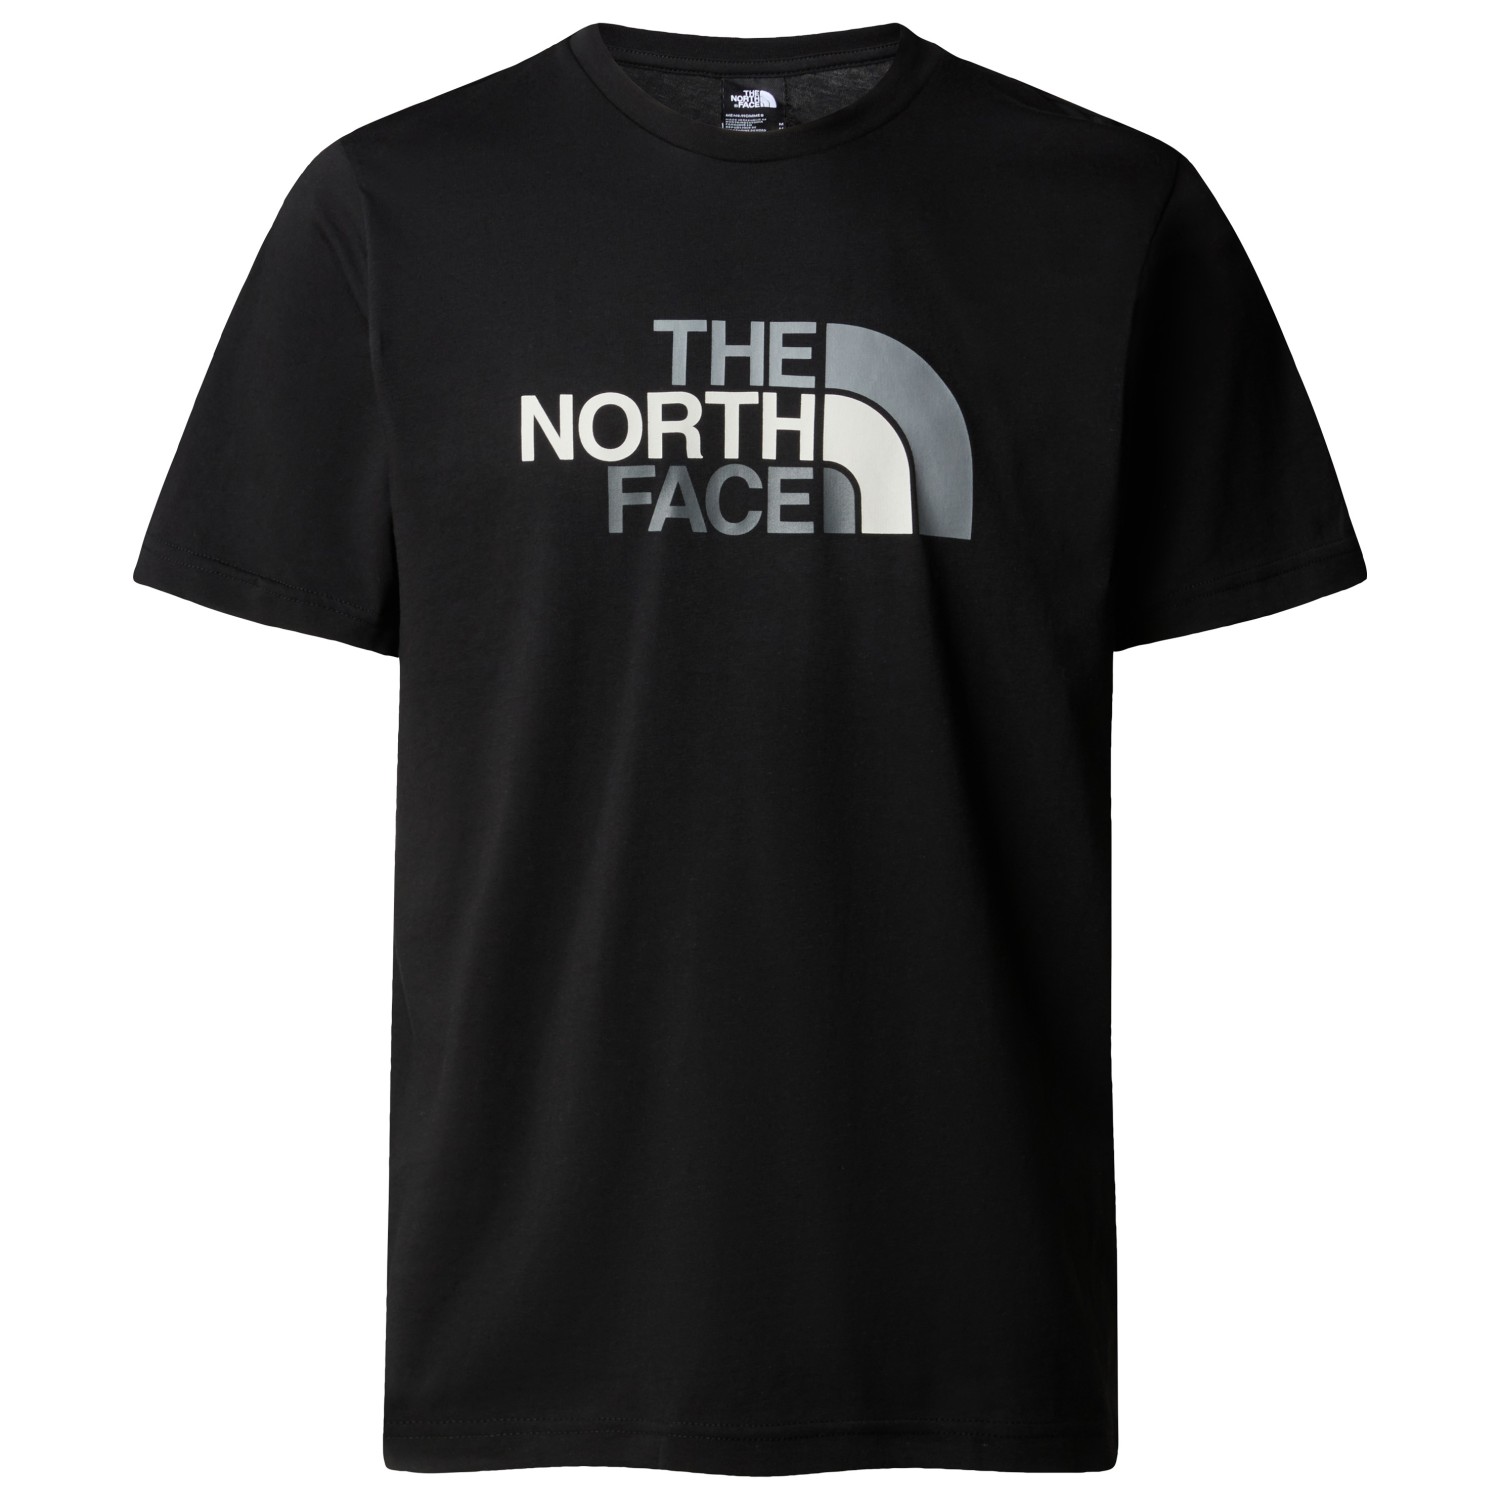 функциональная рубашка the north face women s flex circuit s s tee цвет tnf black Футболка The North Face S/S Easy Tee, цвет TNF Black